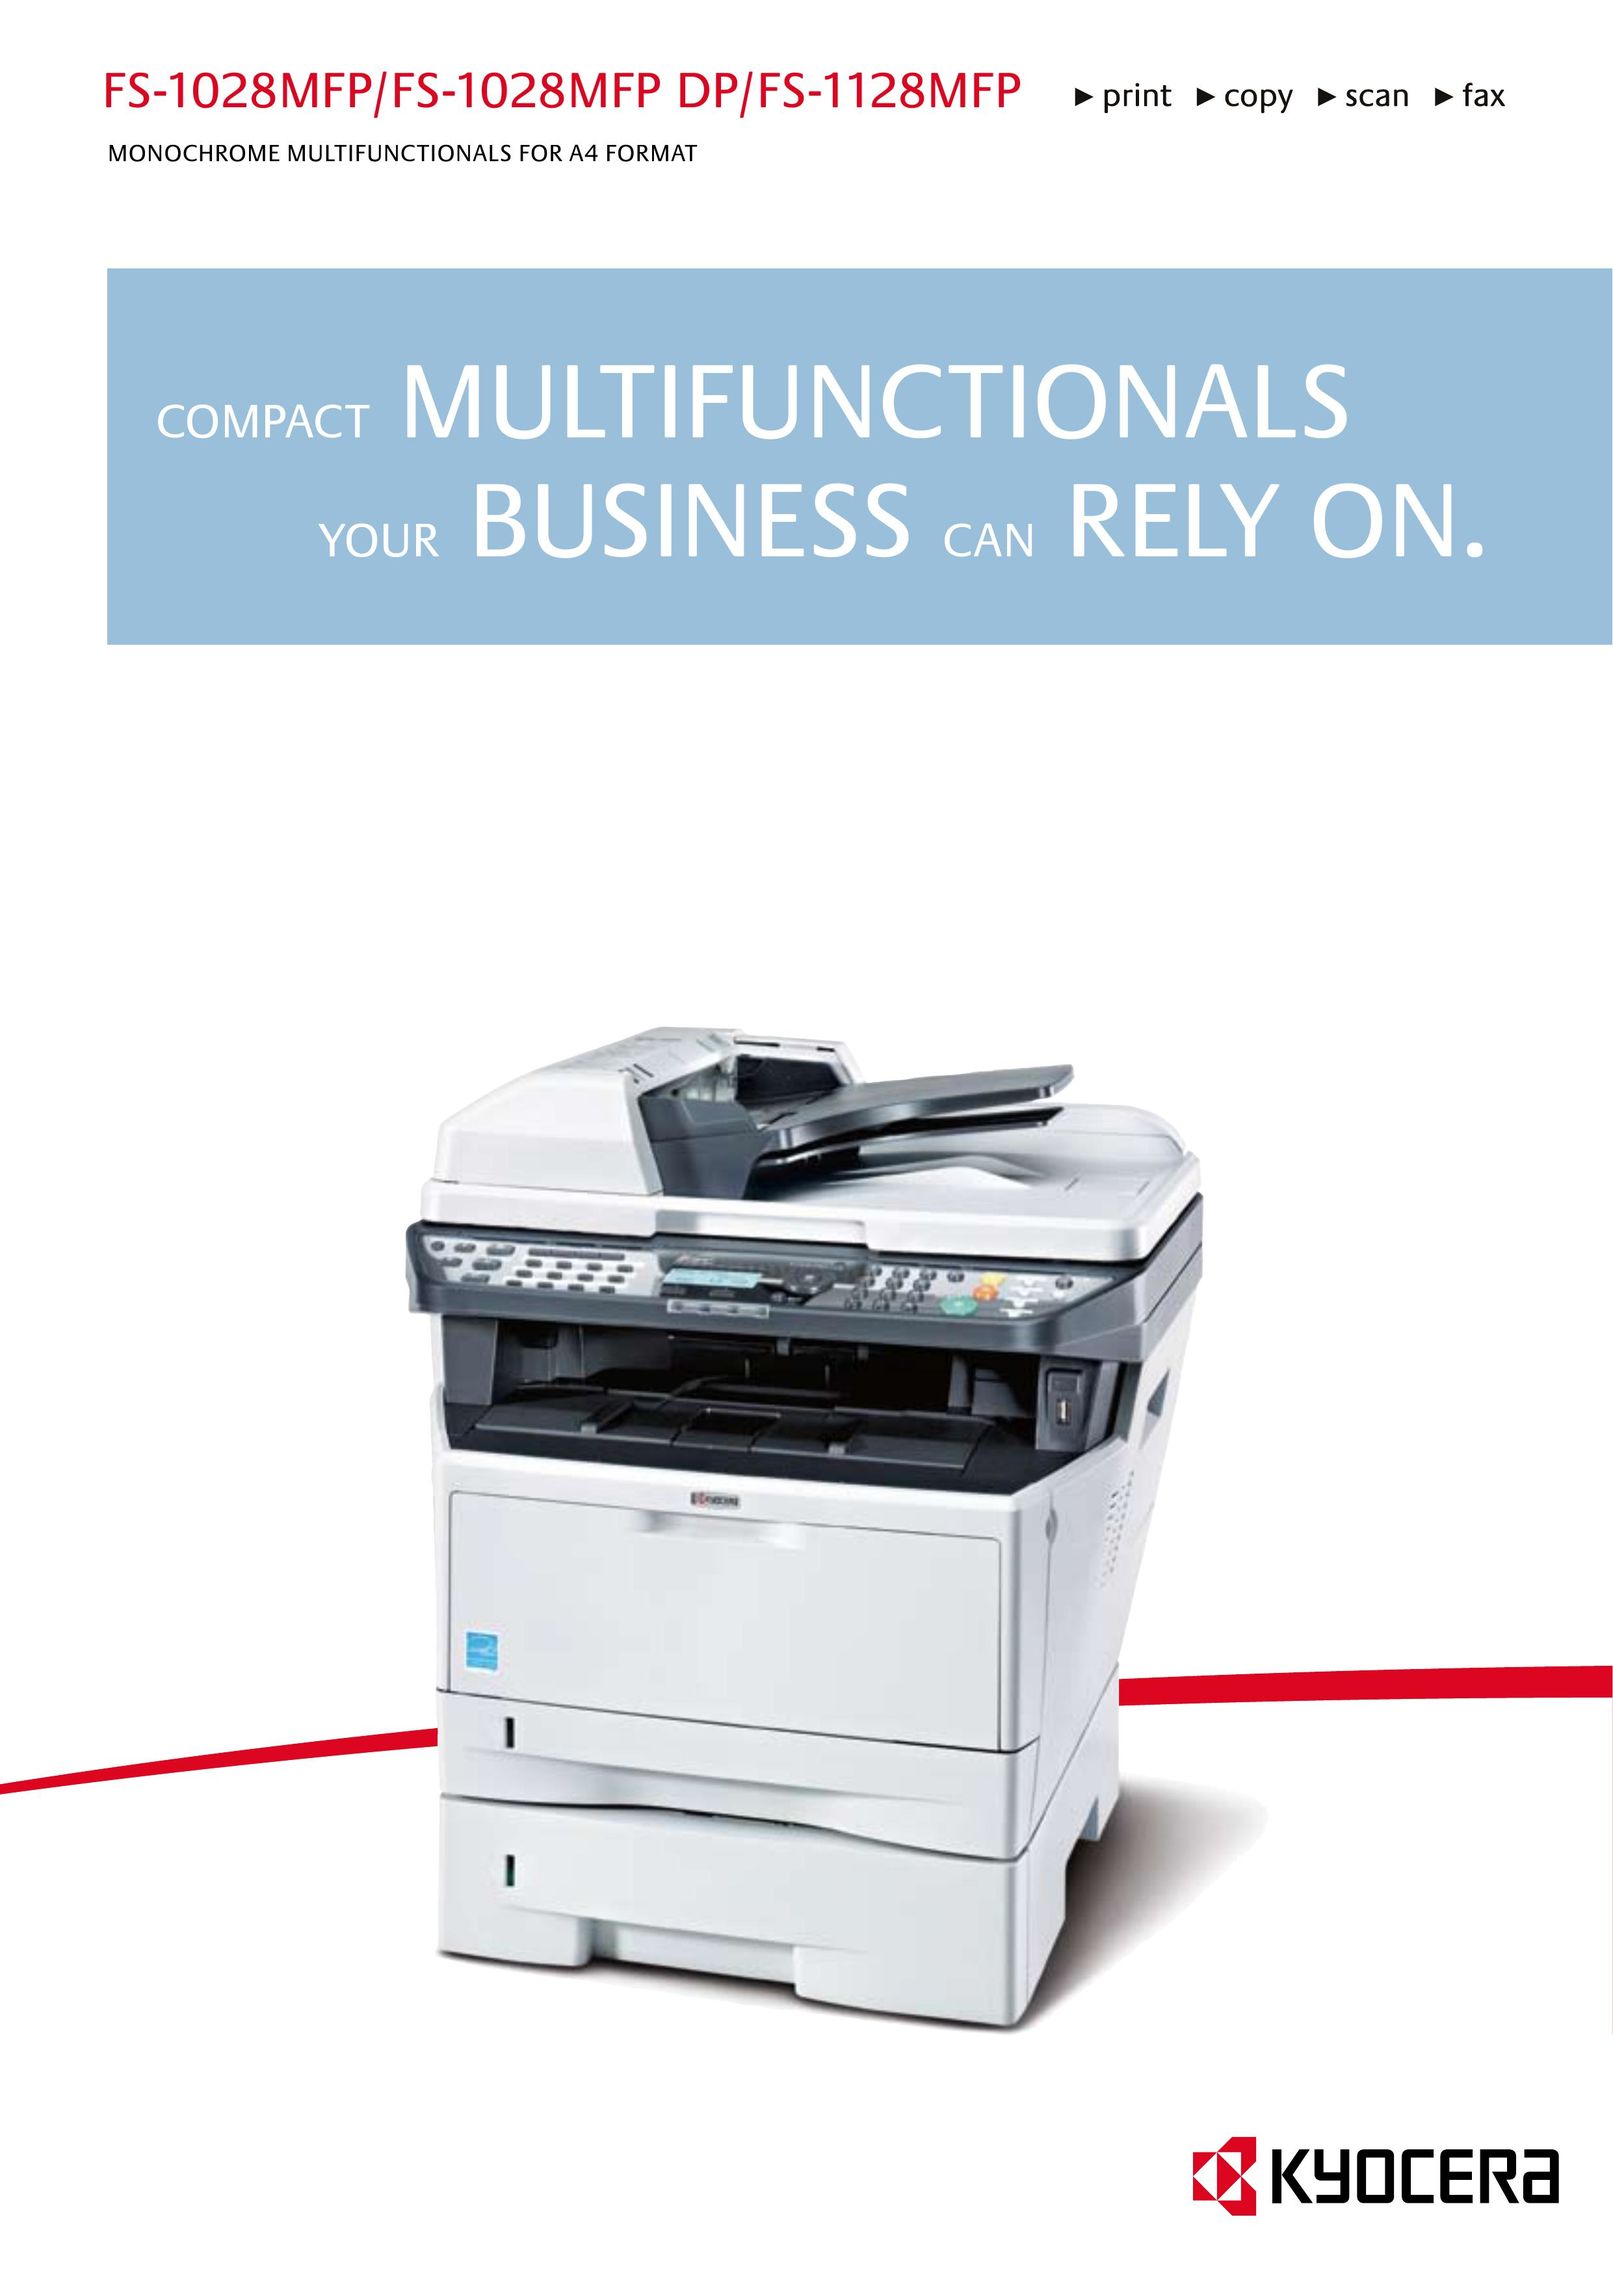 Kyocera FS-1028MFP All in One Printer User Manual